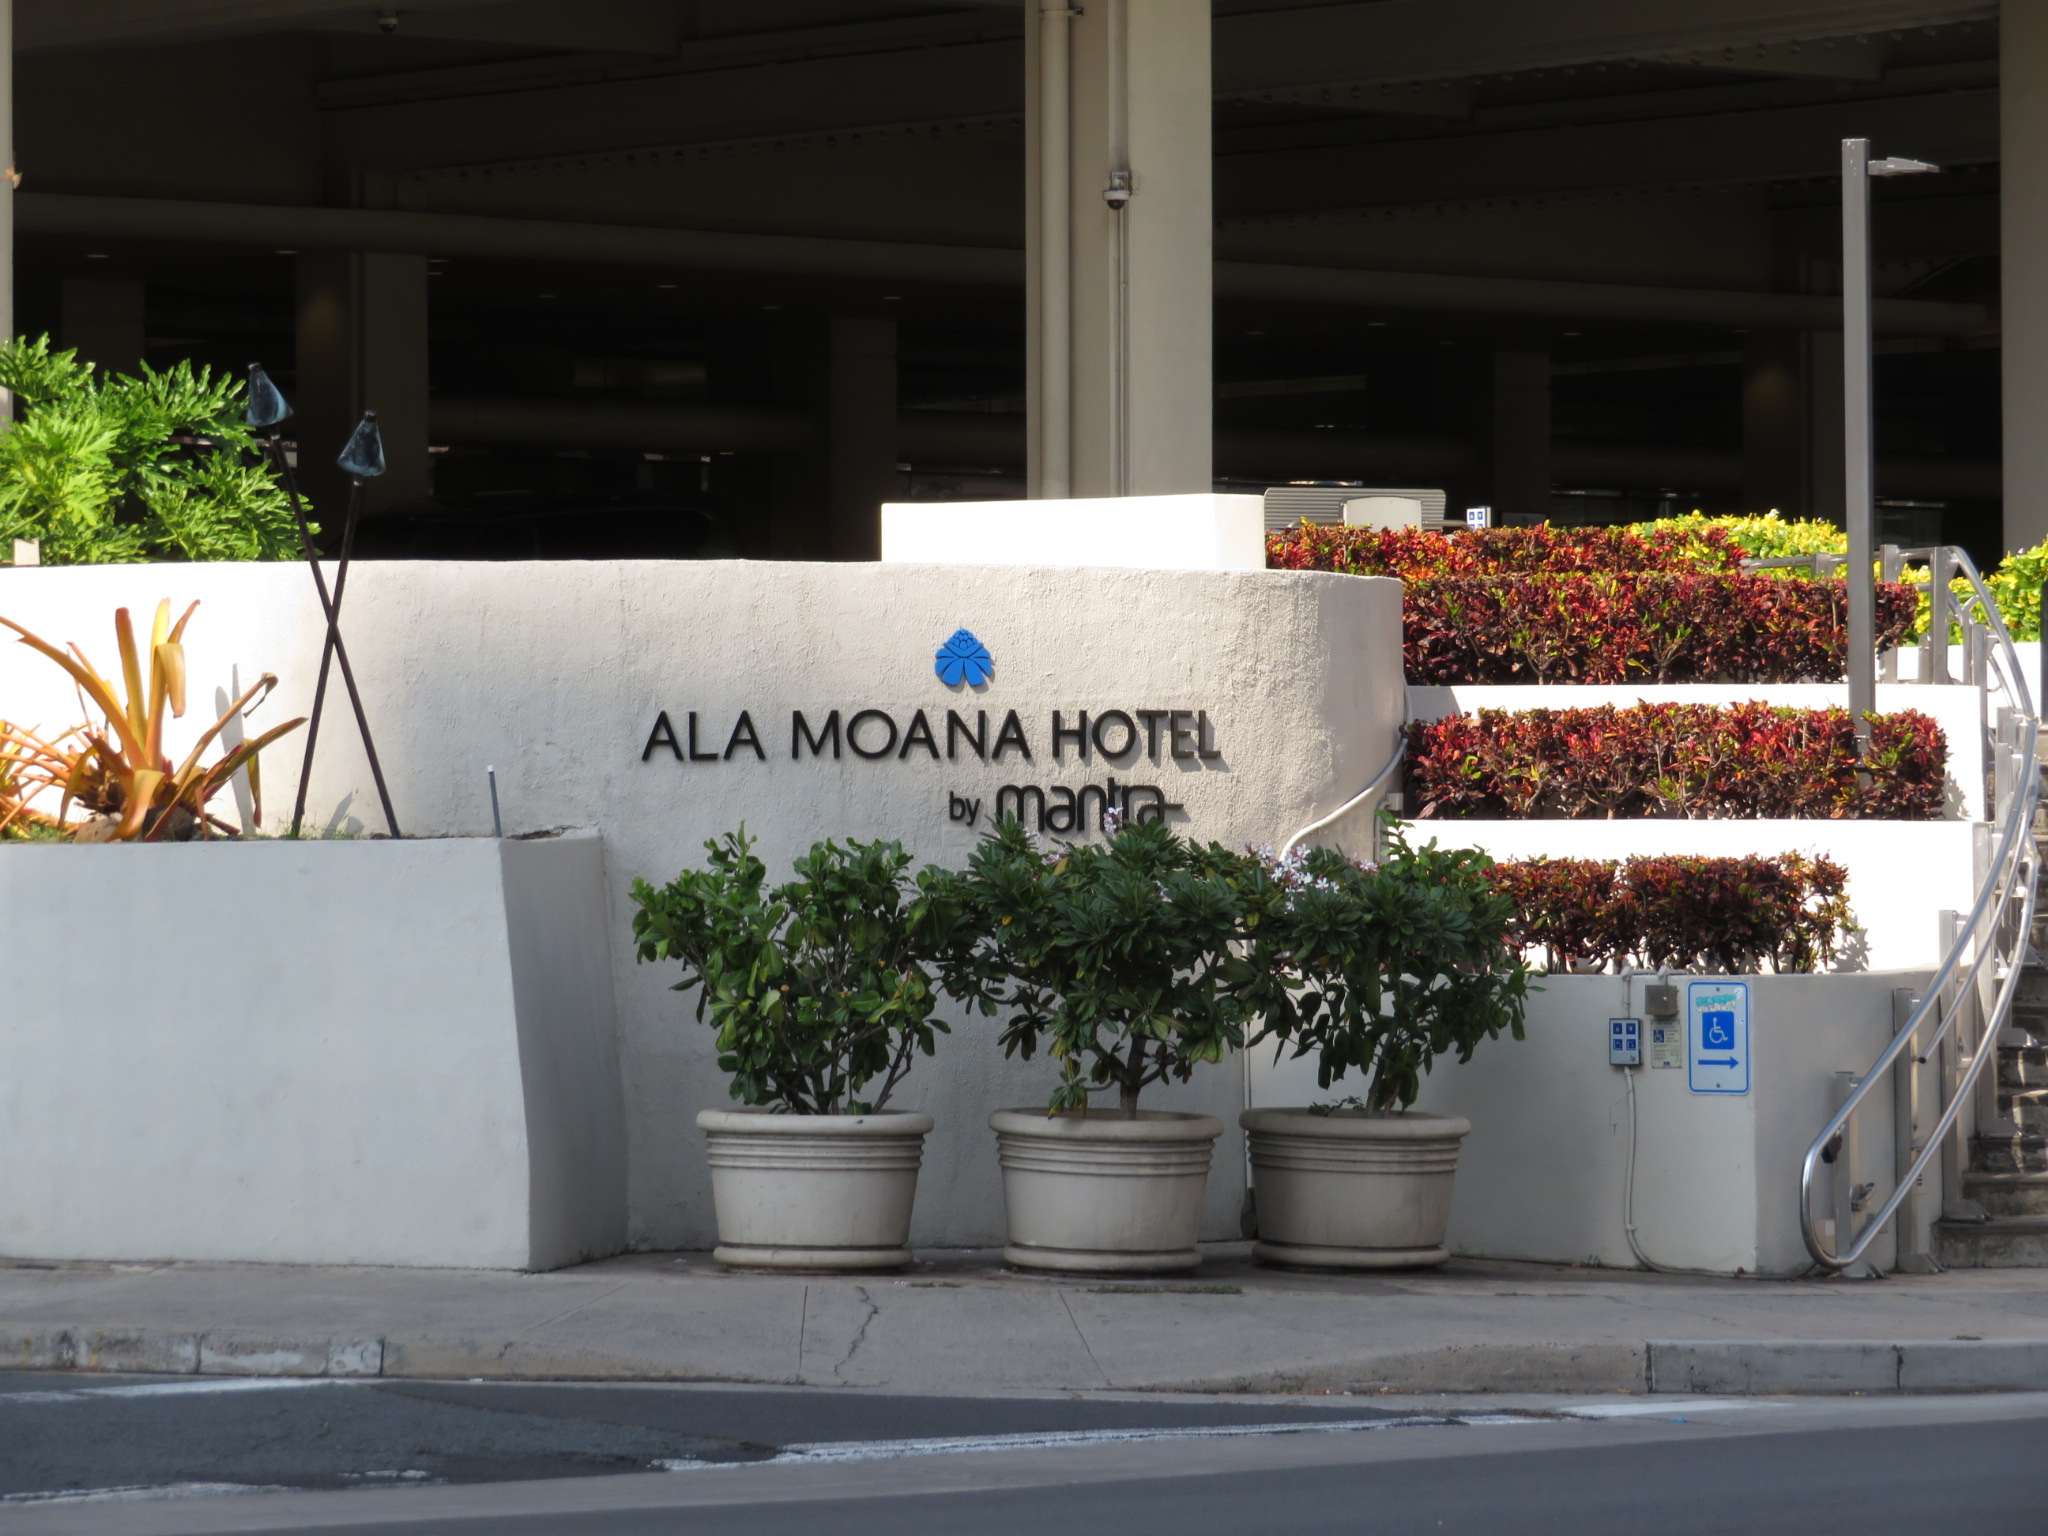 アラモアナ・ホテル・コンド / Ala Moana Hotel Condo